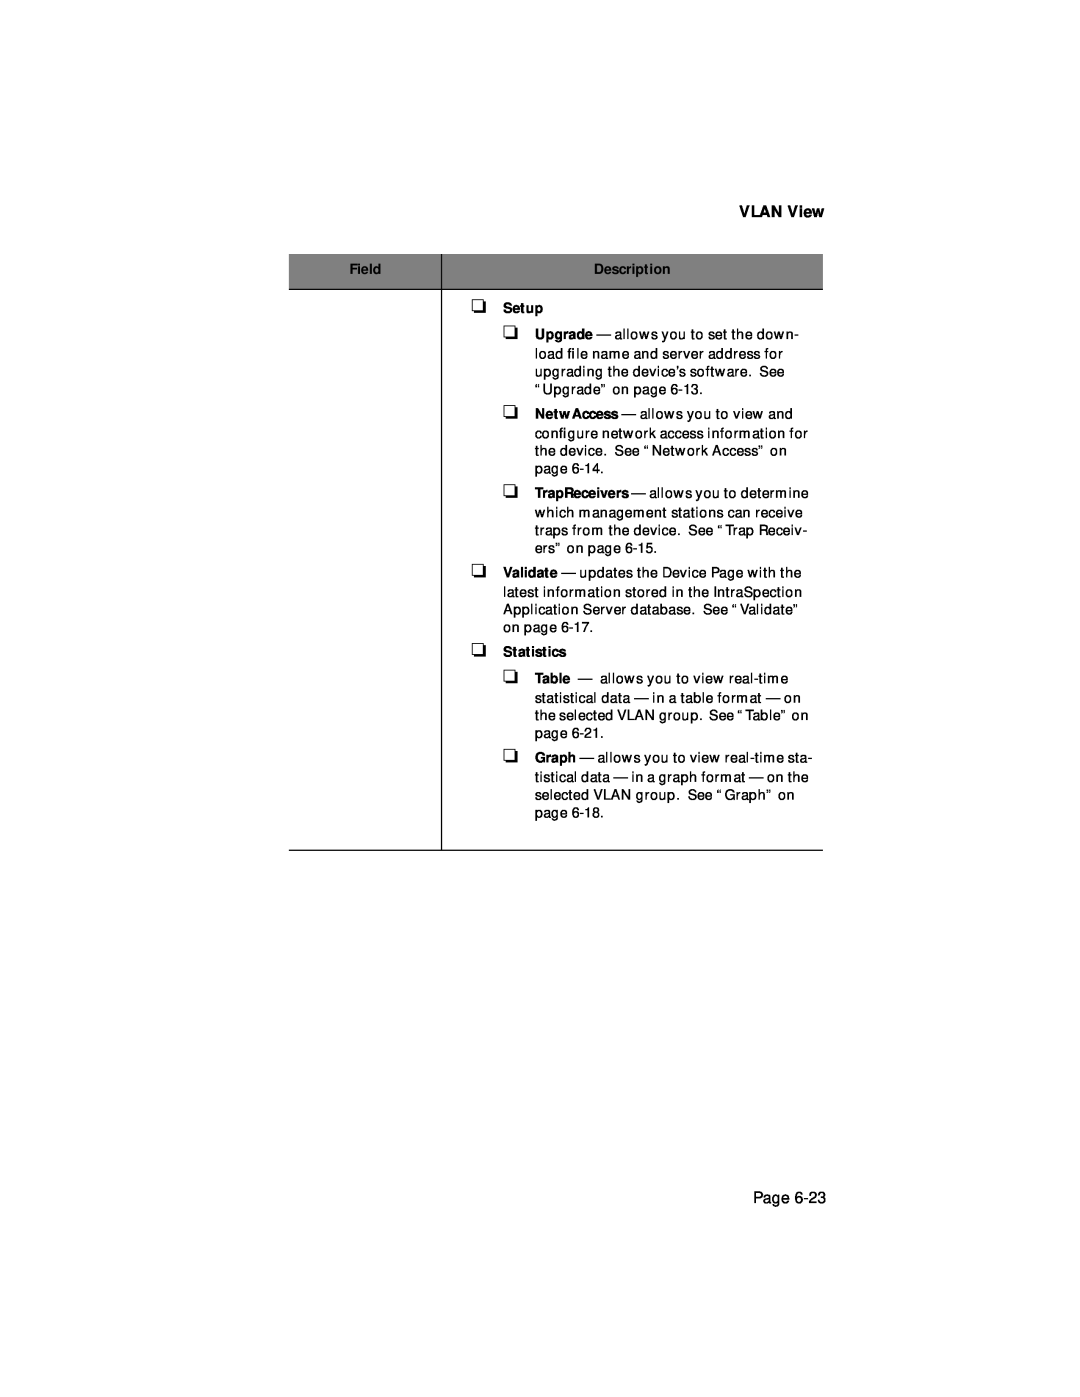 Asante Technologies 1000 user manual VLAN View, Page 